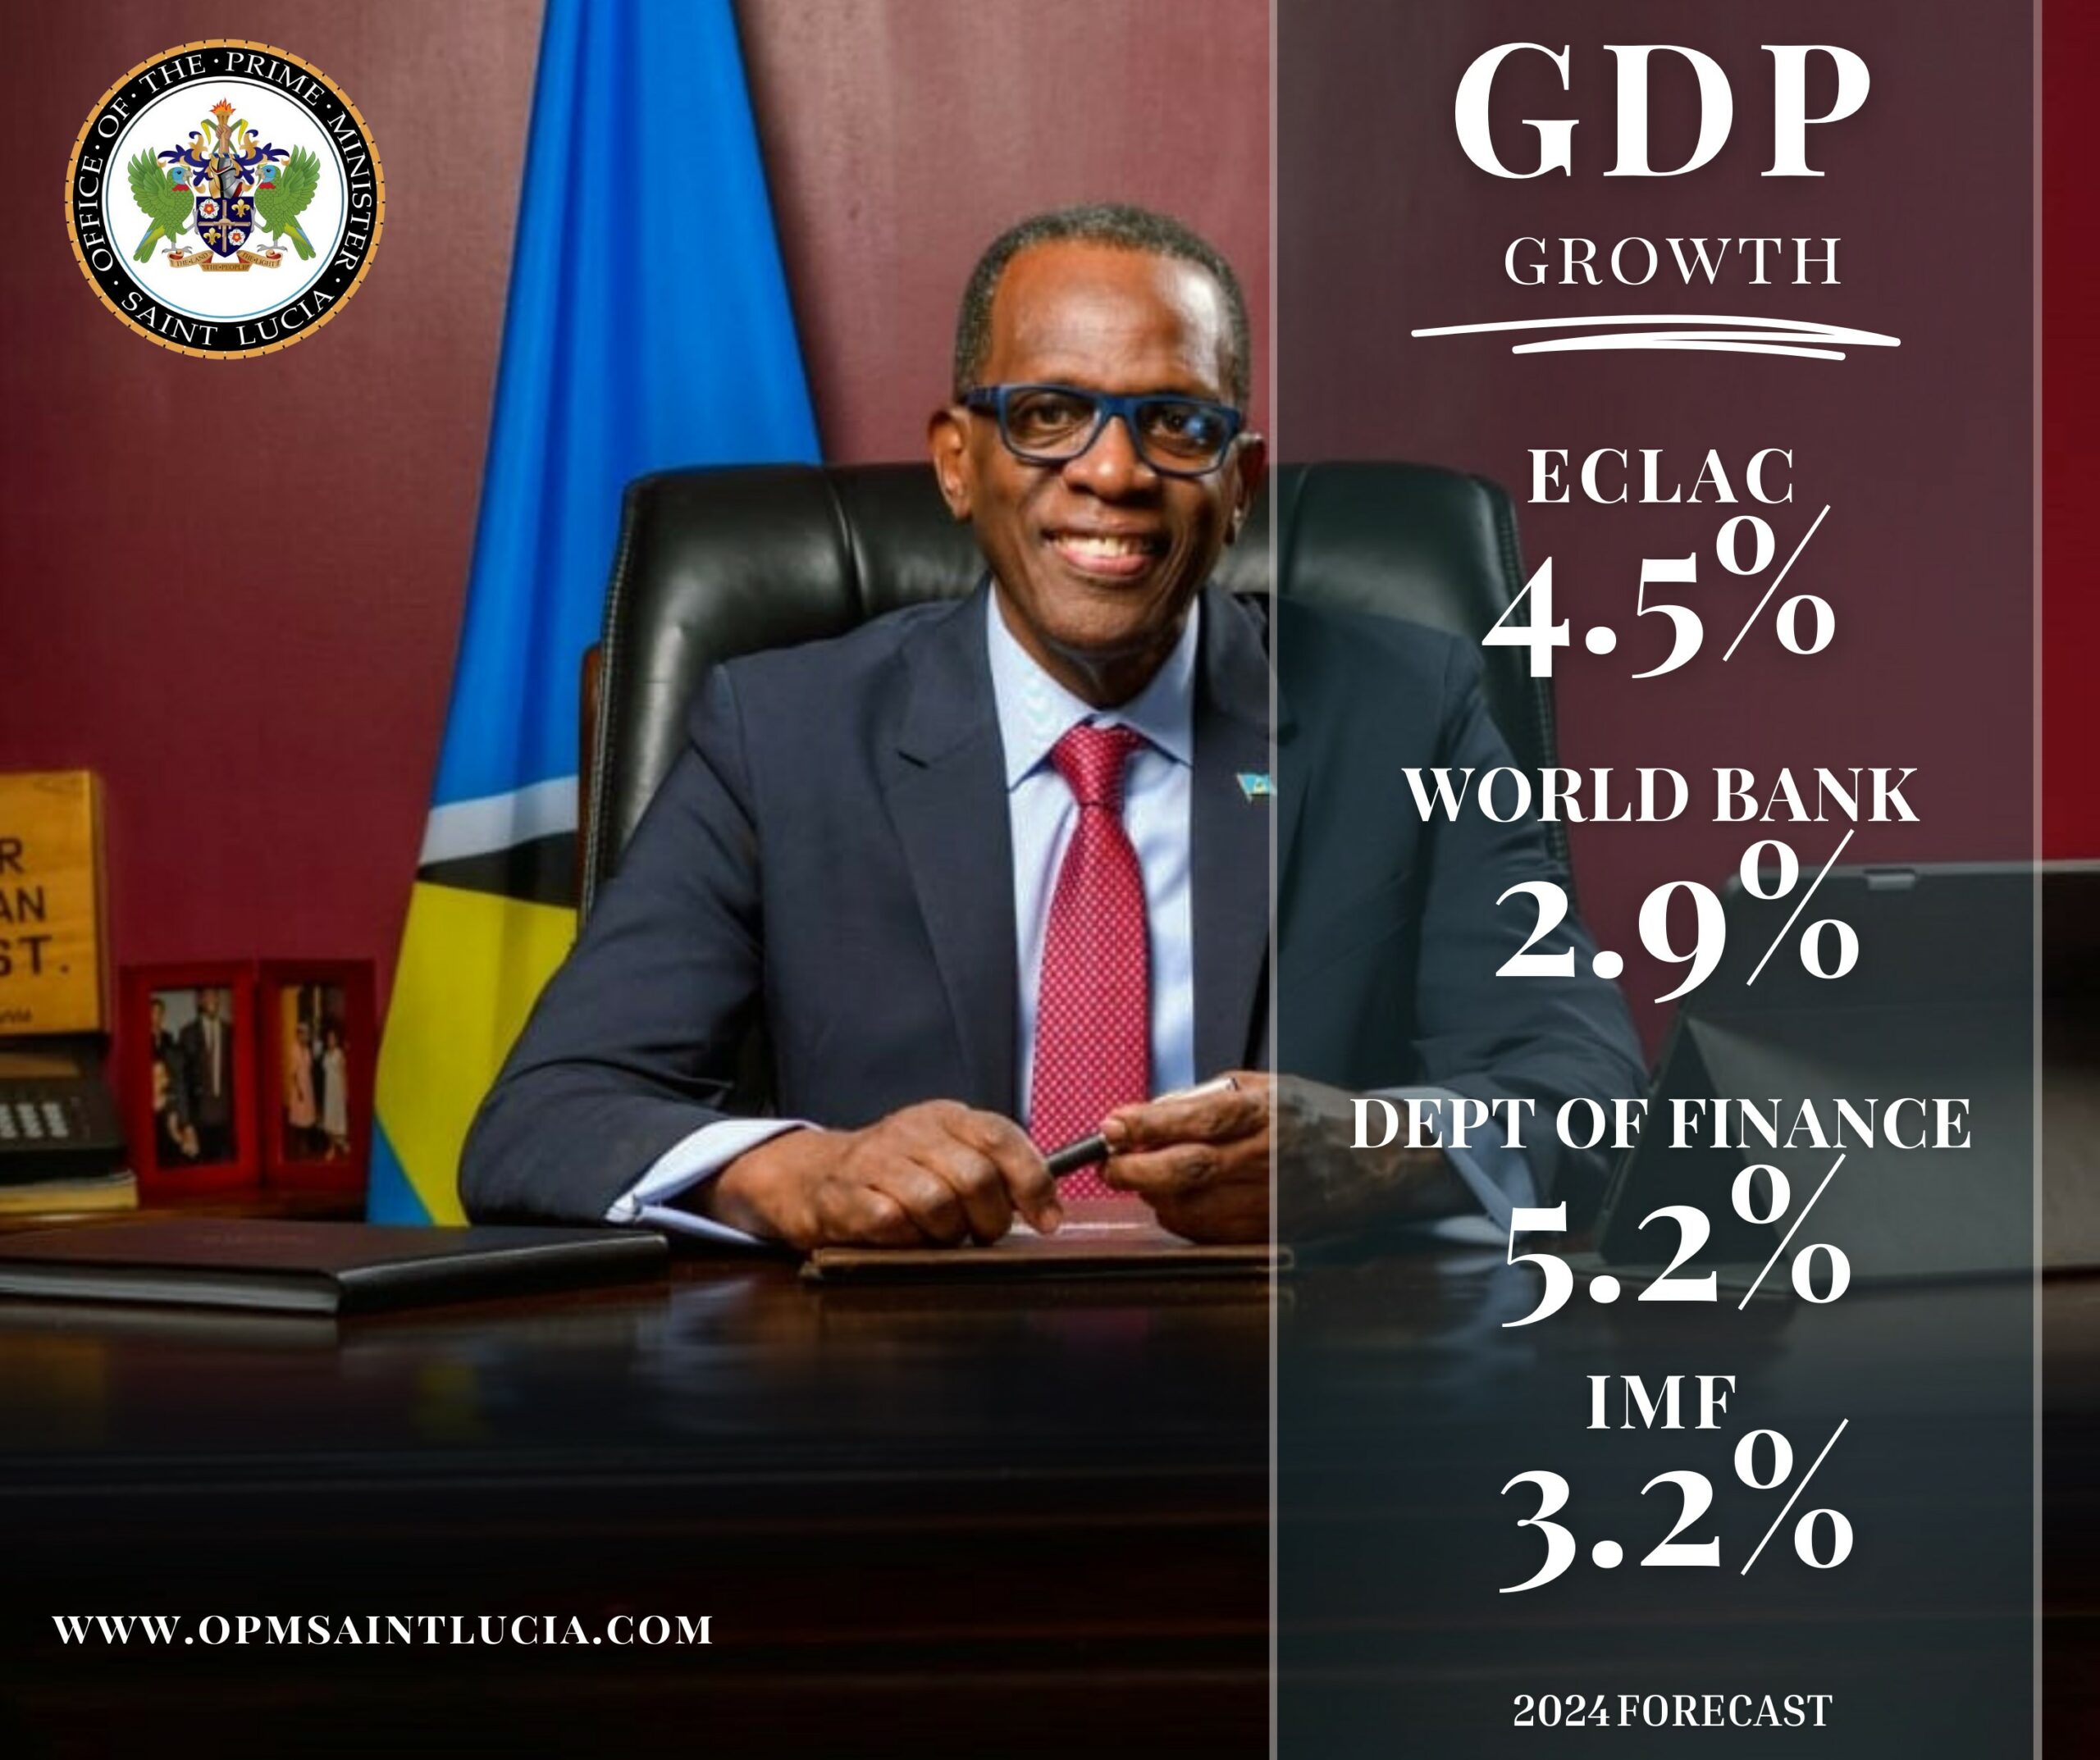 Saint Lucia GDP growth forecast.